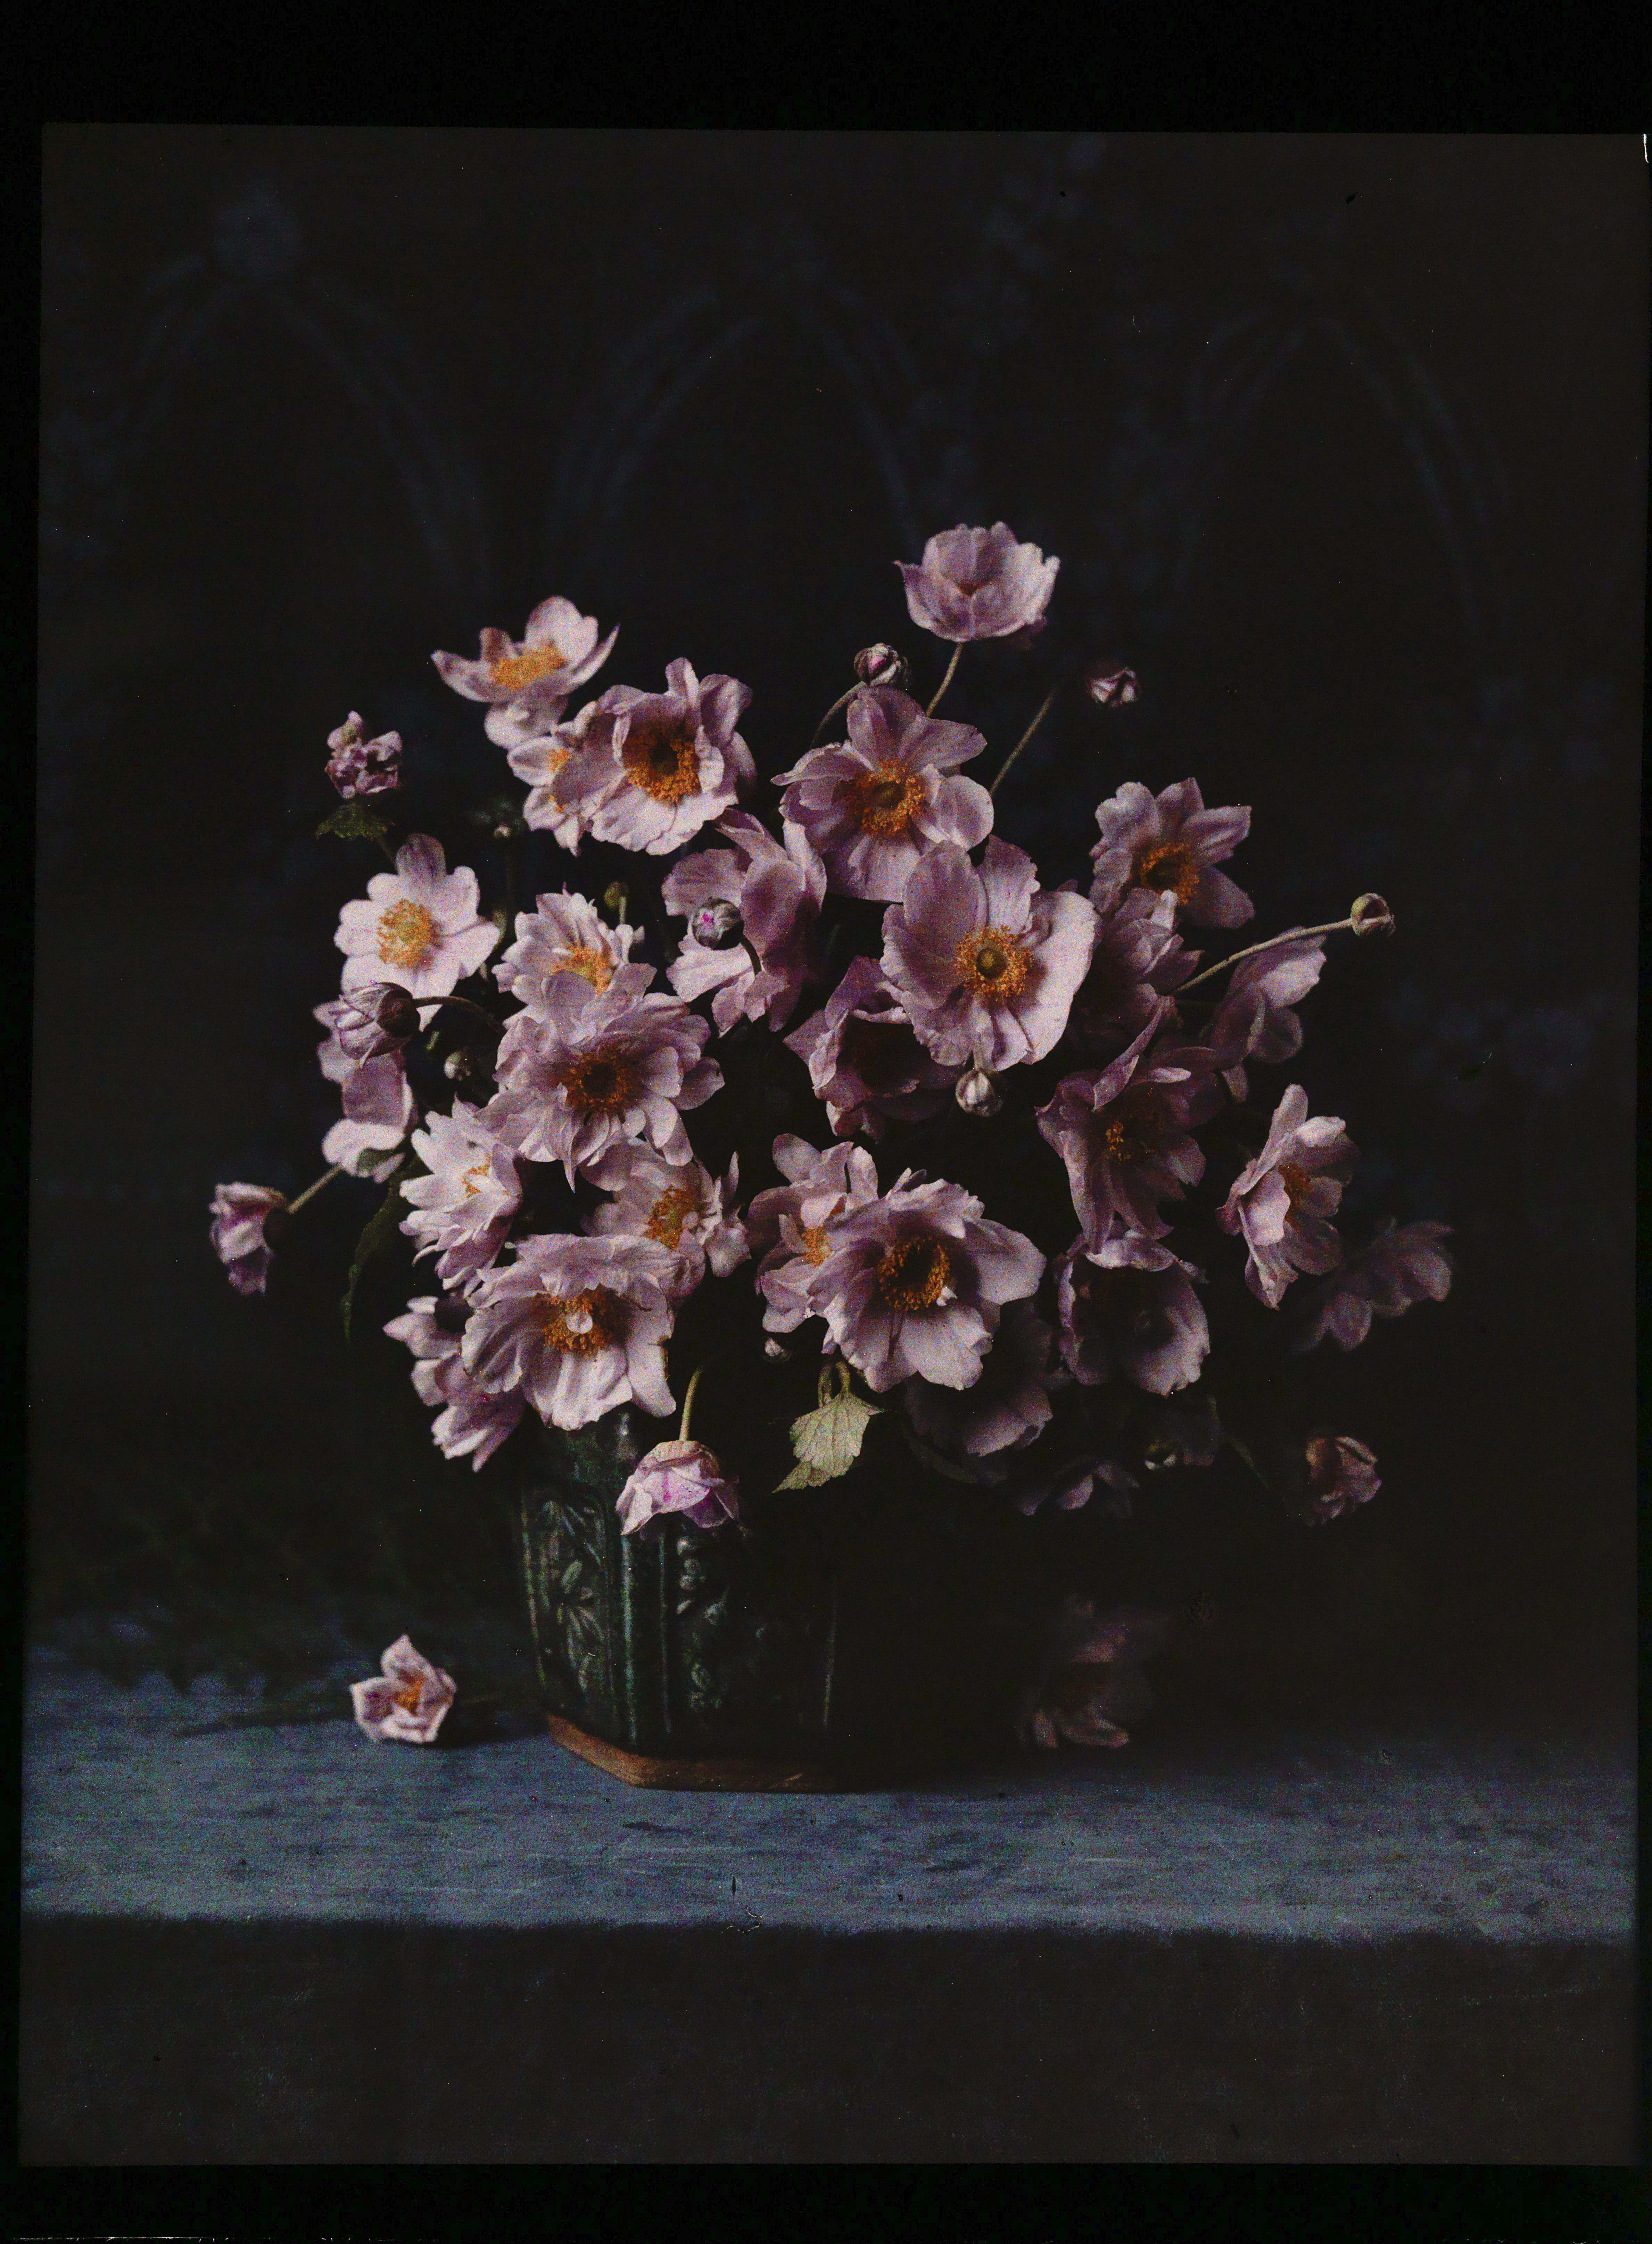 Vaas met anemonen, anonymous, ca. 1907 - ca. 1935 | src Rijksmuseum